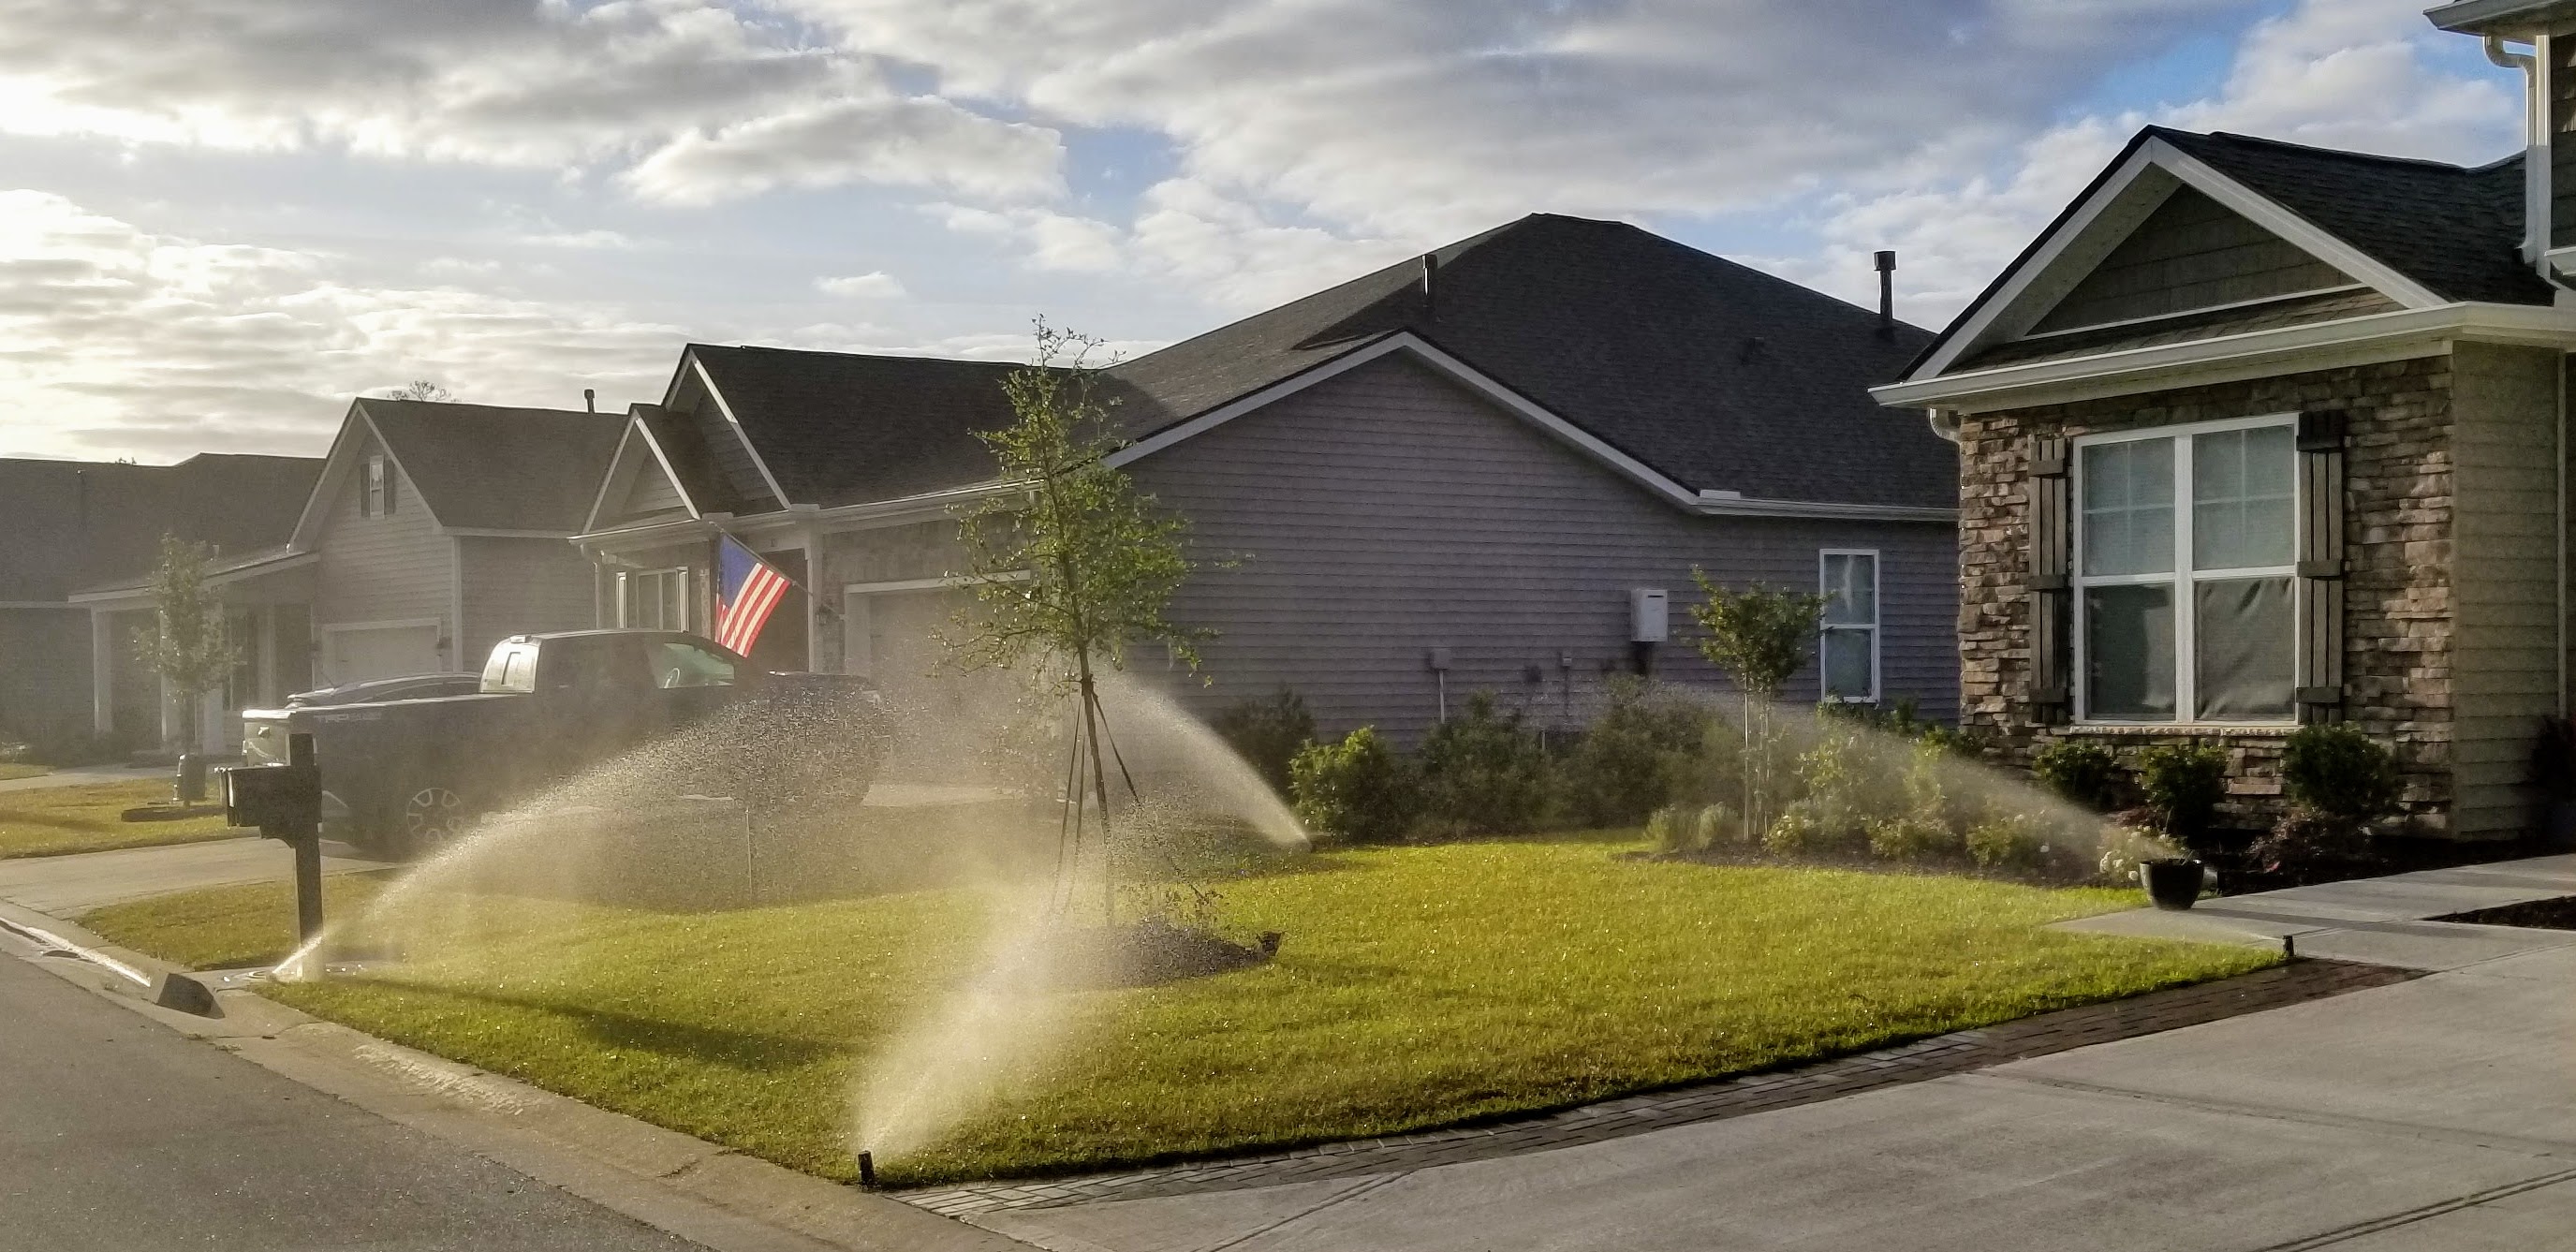 Irrigation sprinklers watering lawn